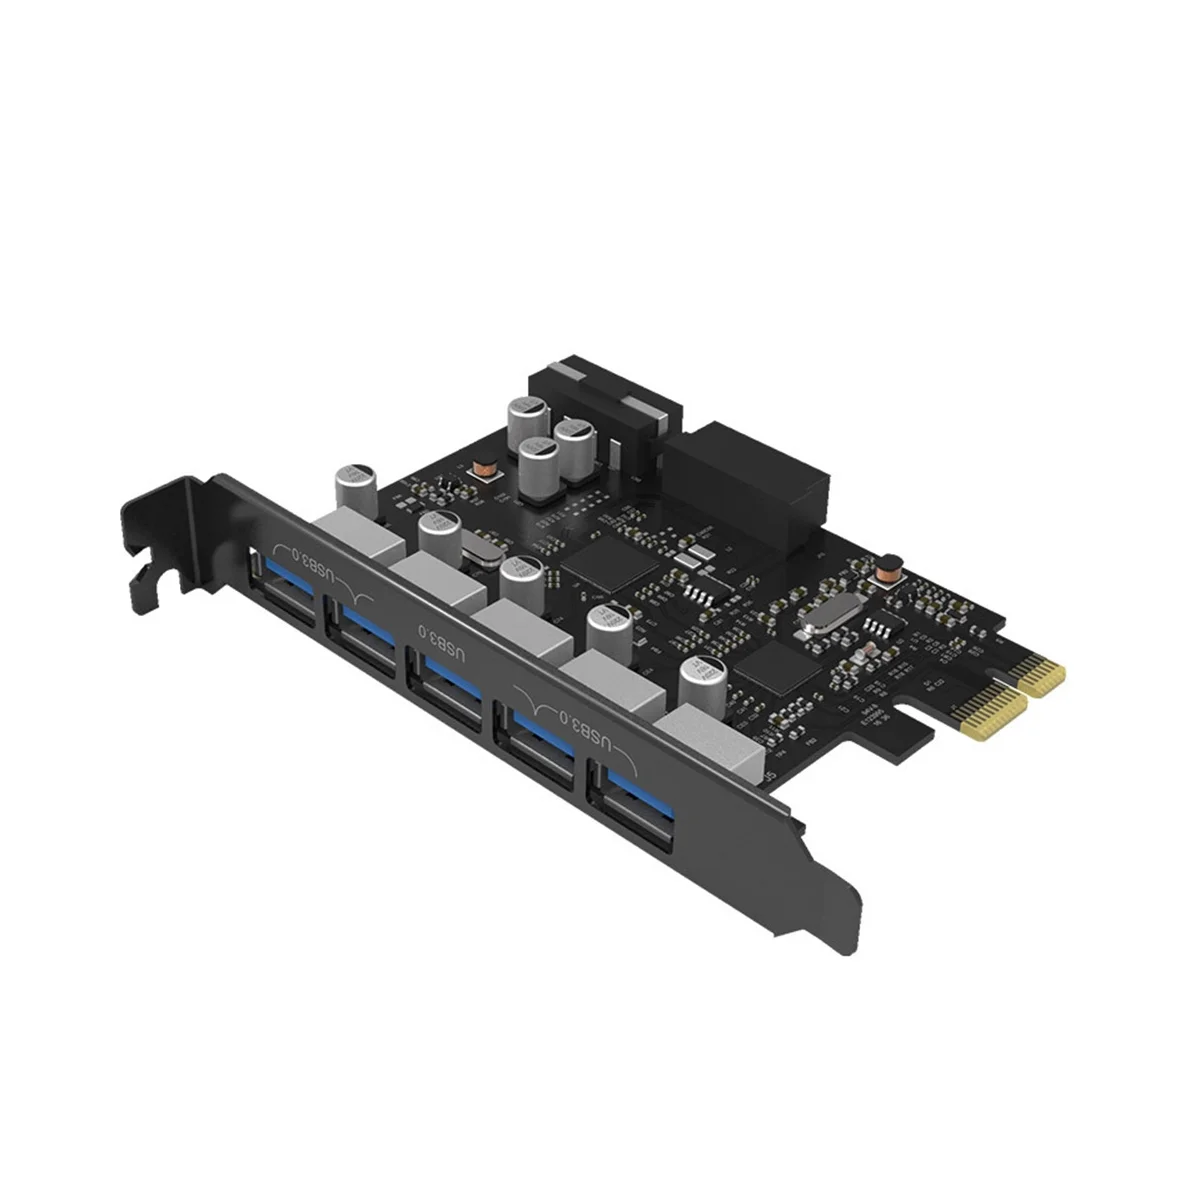 USB3.0 PCI Adaptörü 5 Port USB3. 0 Genişletme Kartı Yüksek Hızlı Aktarım PCI-E masaüstü bilgisayar Genişletme Kartı